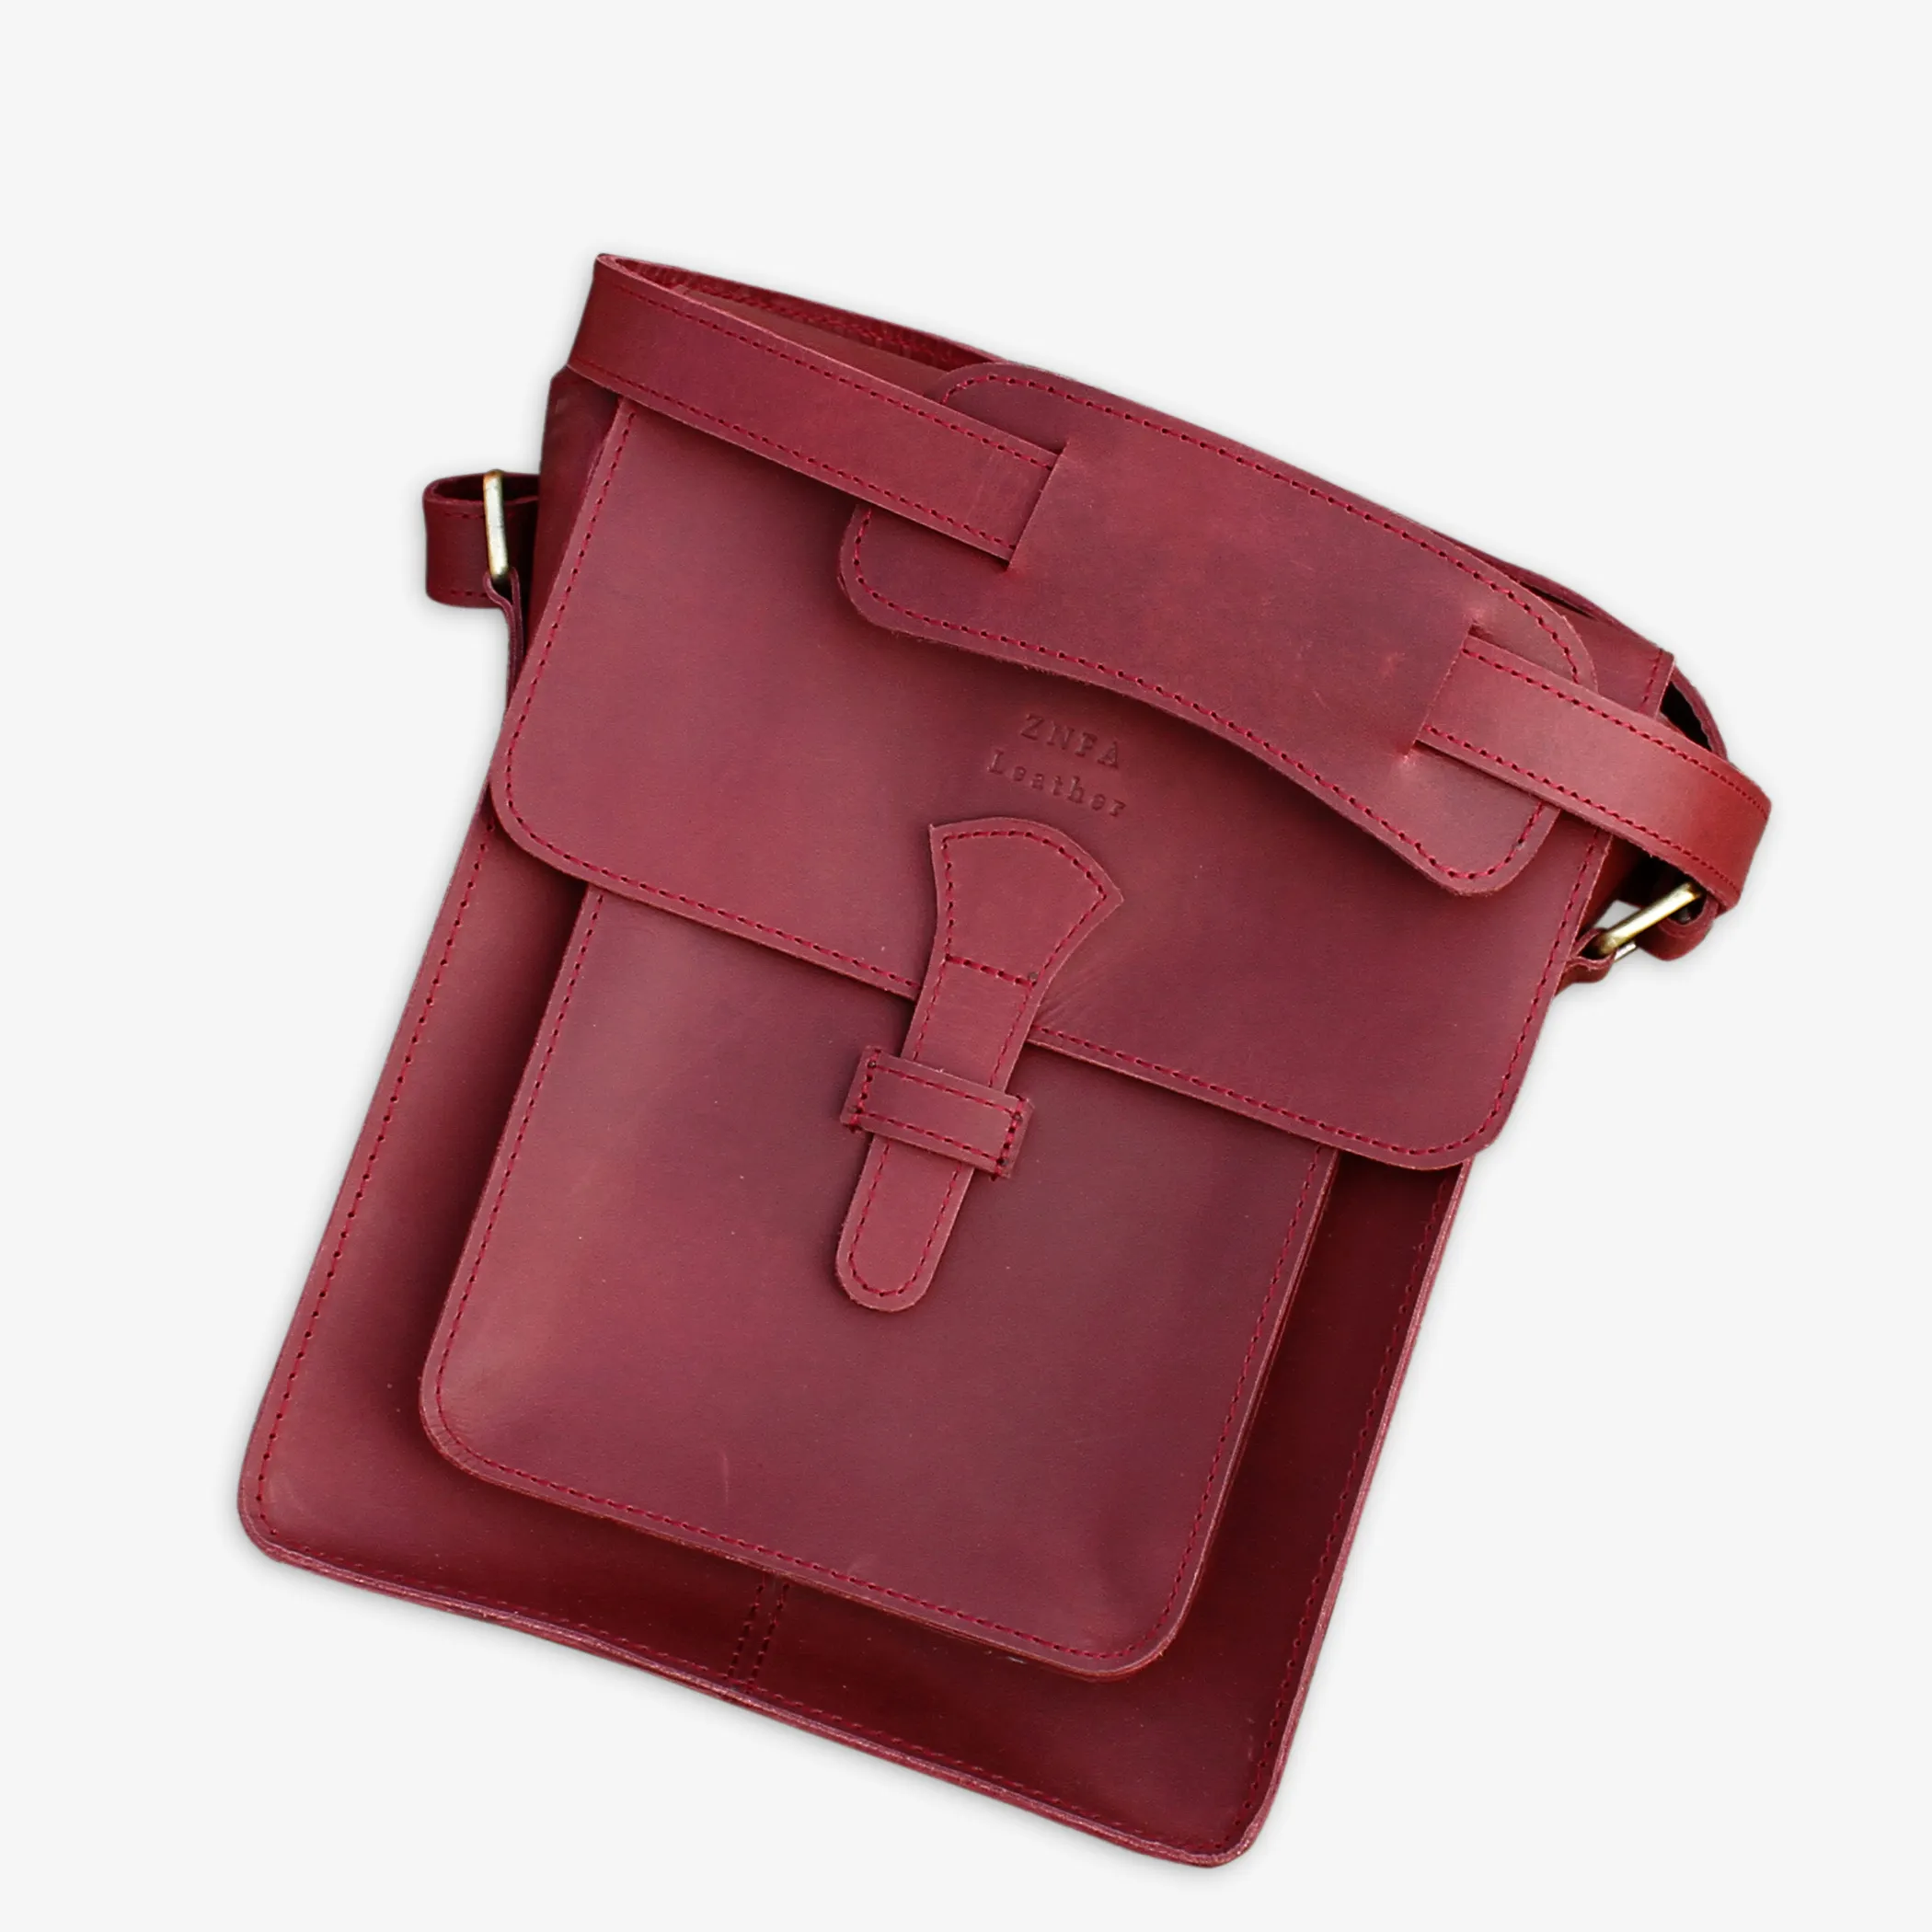 Vintage Genuine Leather Flap Bag Cross Body Shoulder Satchel Bag Crazy Horse Leather Small Messenger Bag for Men